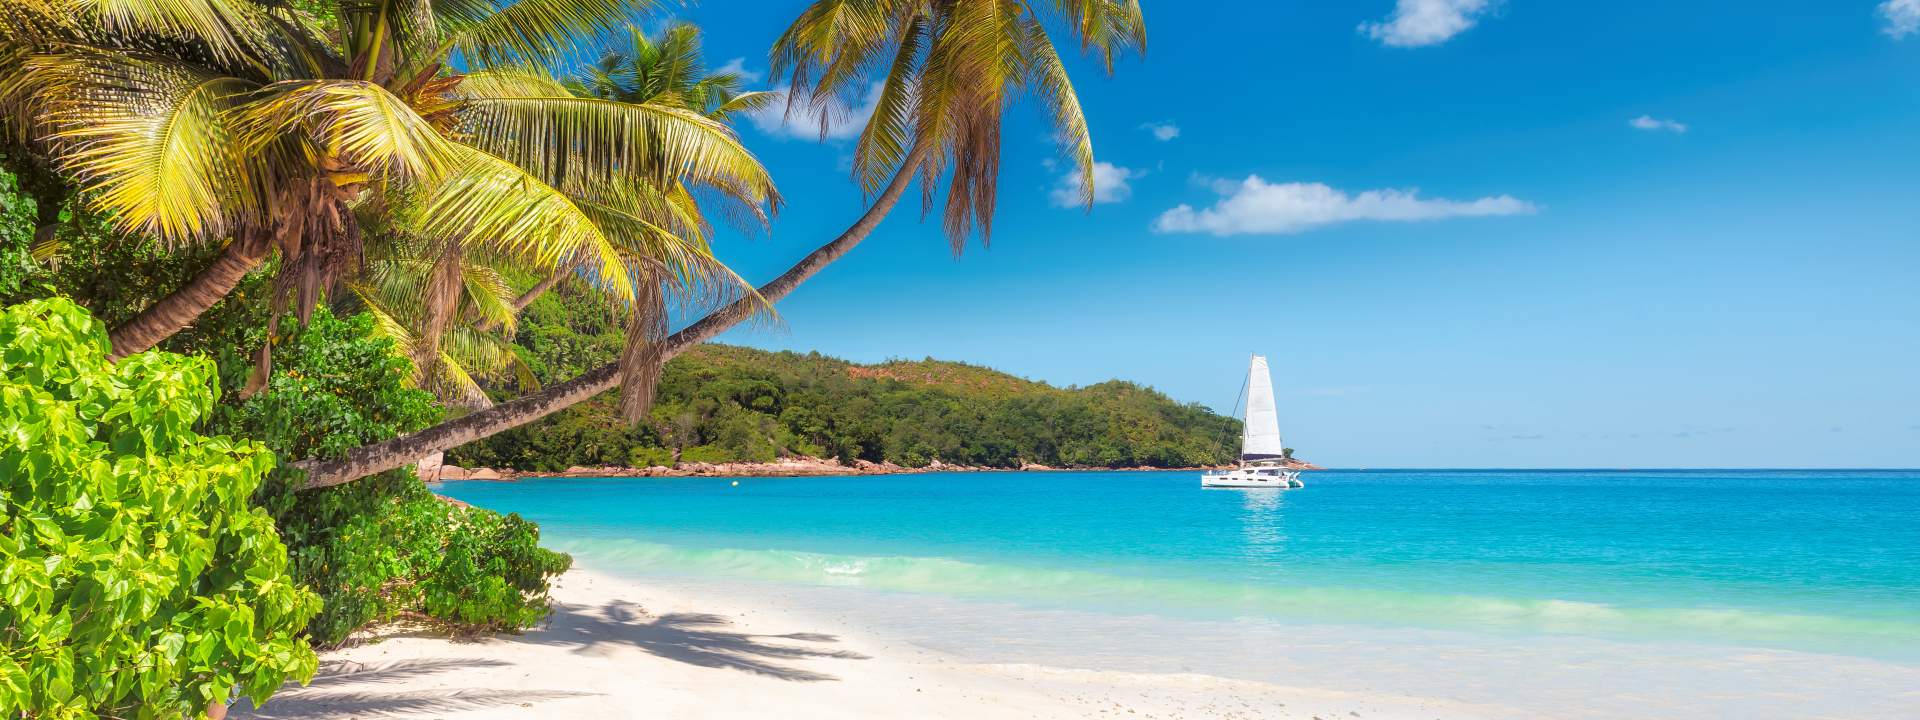 5 jours pour découvrir les joyaux naturels des Seychelles en catamaran